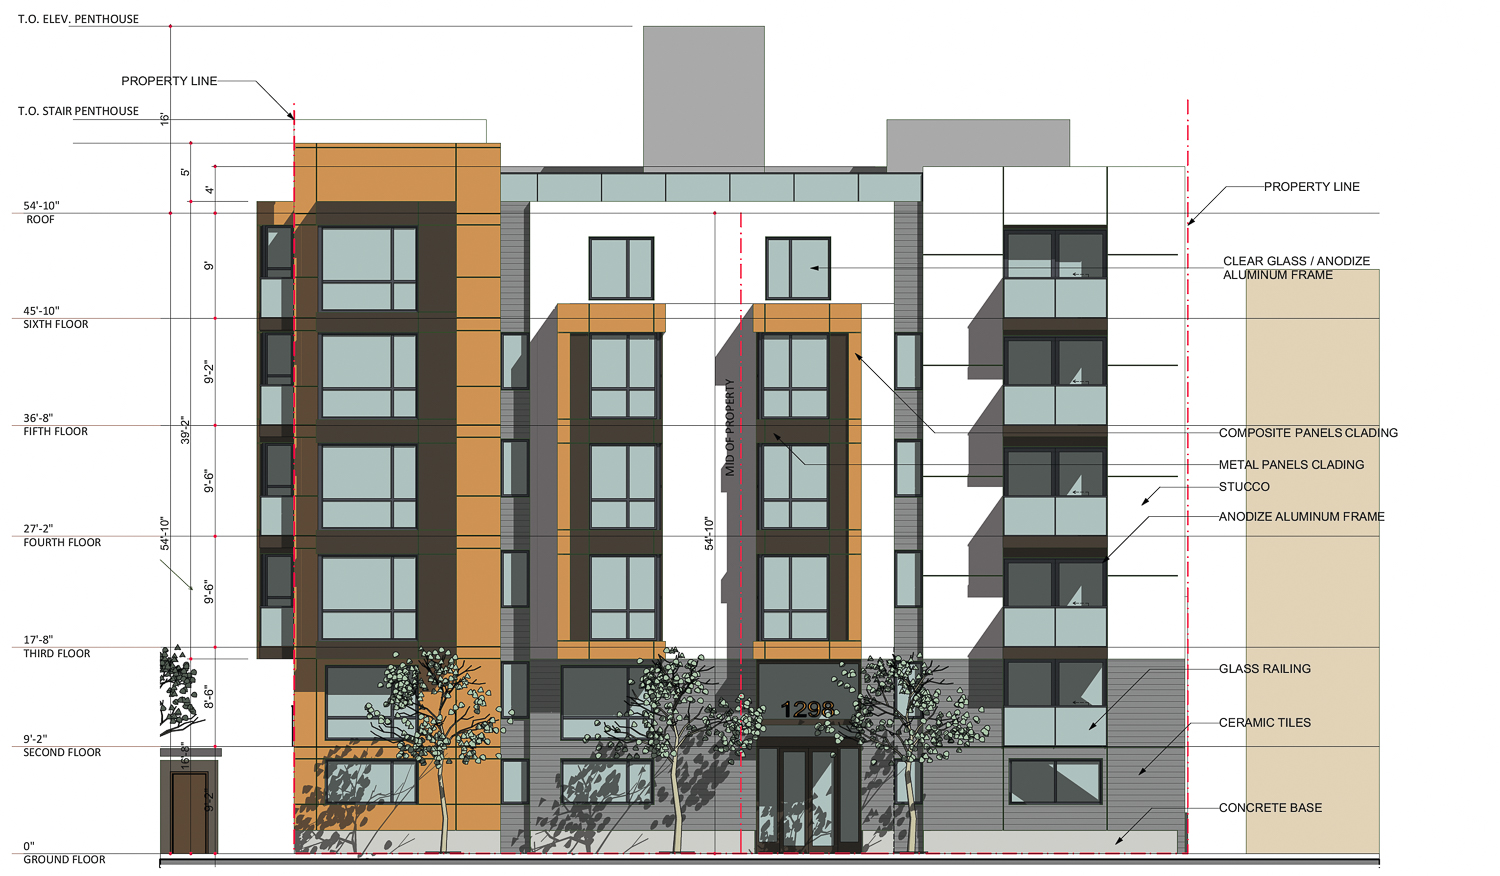 1298 Potrero Avenue facade elevation, image by De Quesada Architects